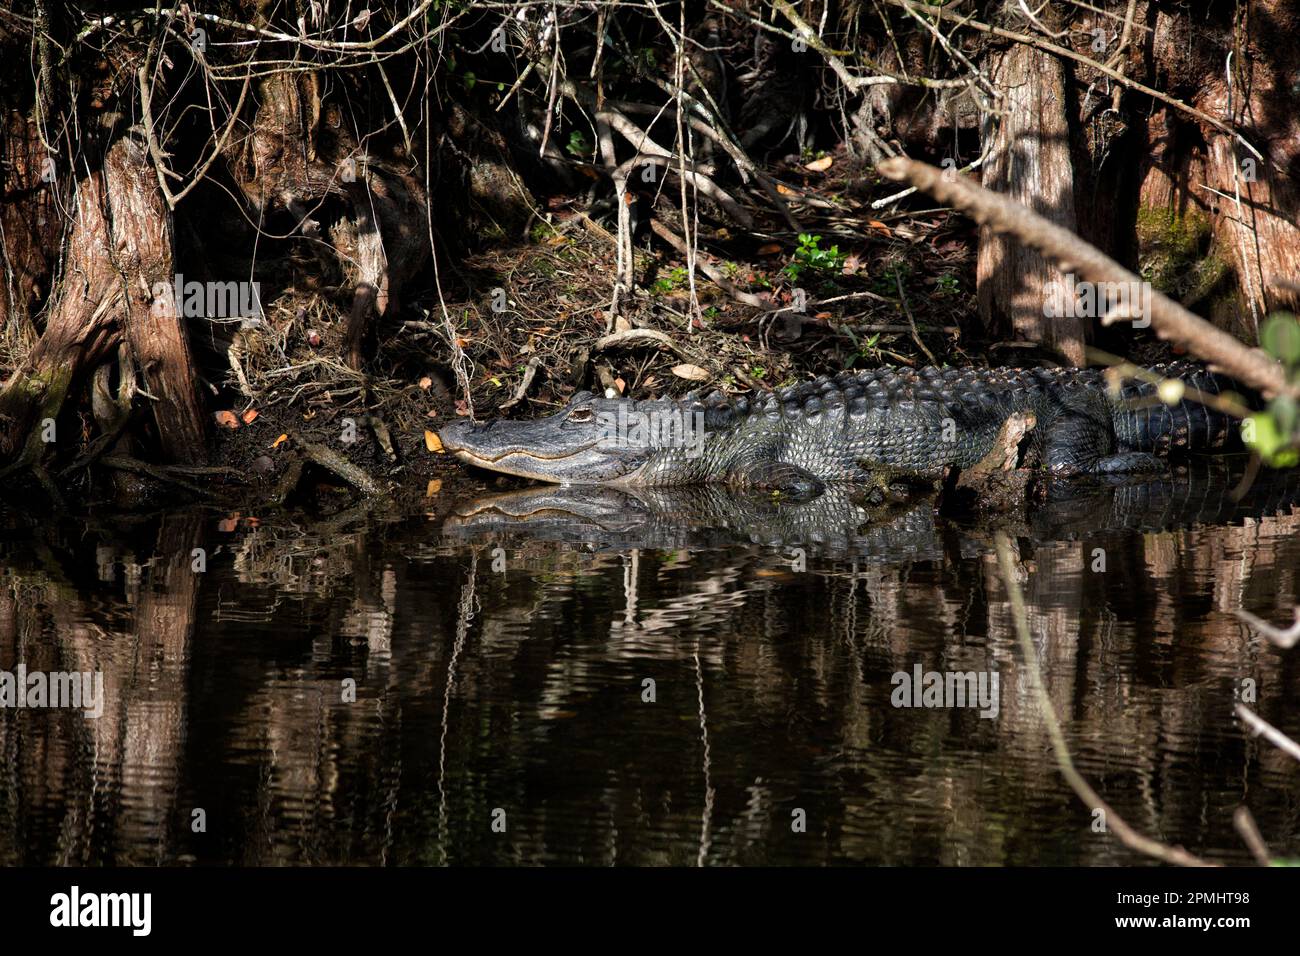 Alligatore ameriano che si illumina all'ombra della Big Cypress Preserve, Florida. La grande lucertola impregna una primitiva essenza primordiale nella palude. Foto Stock